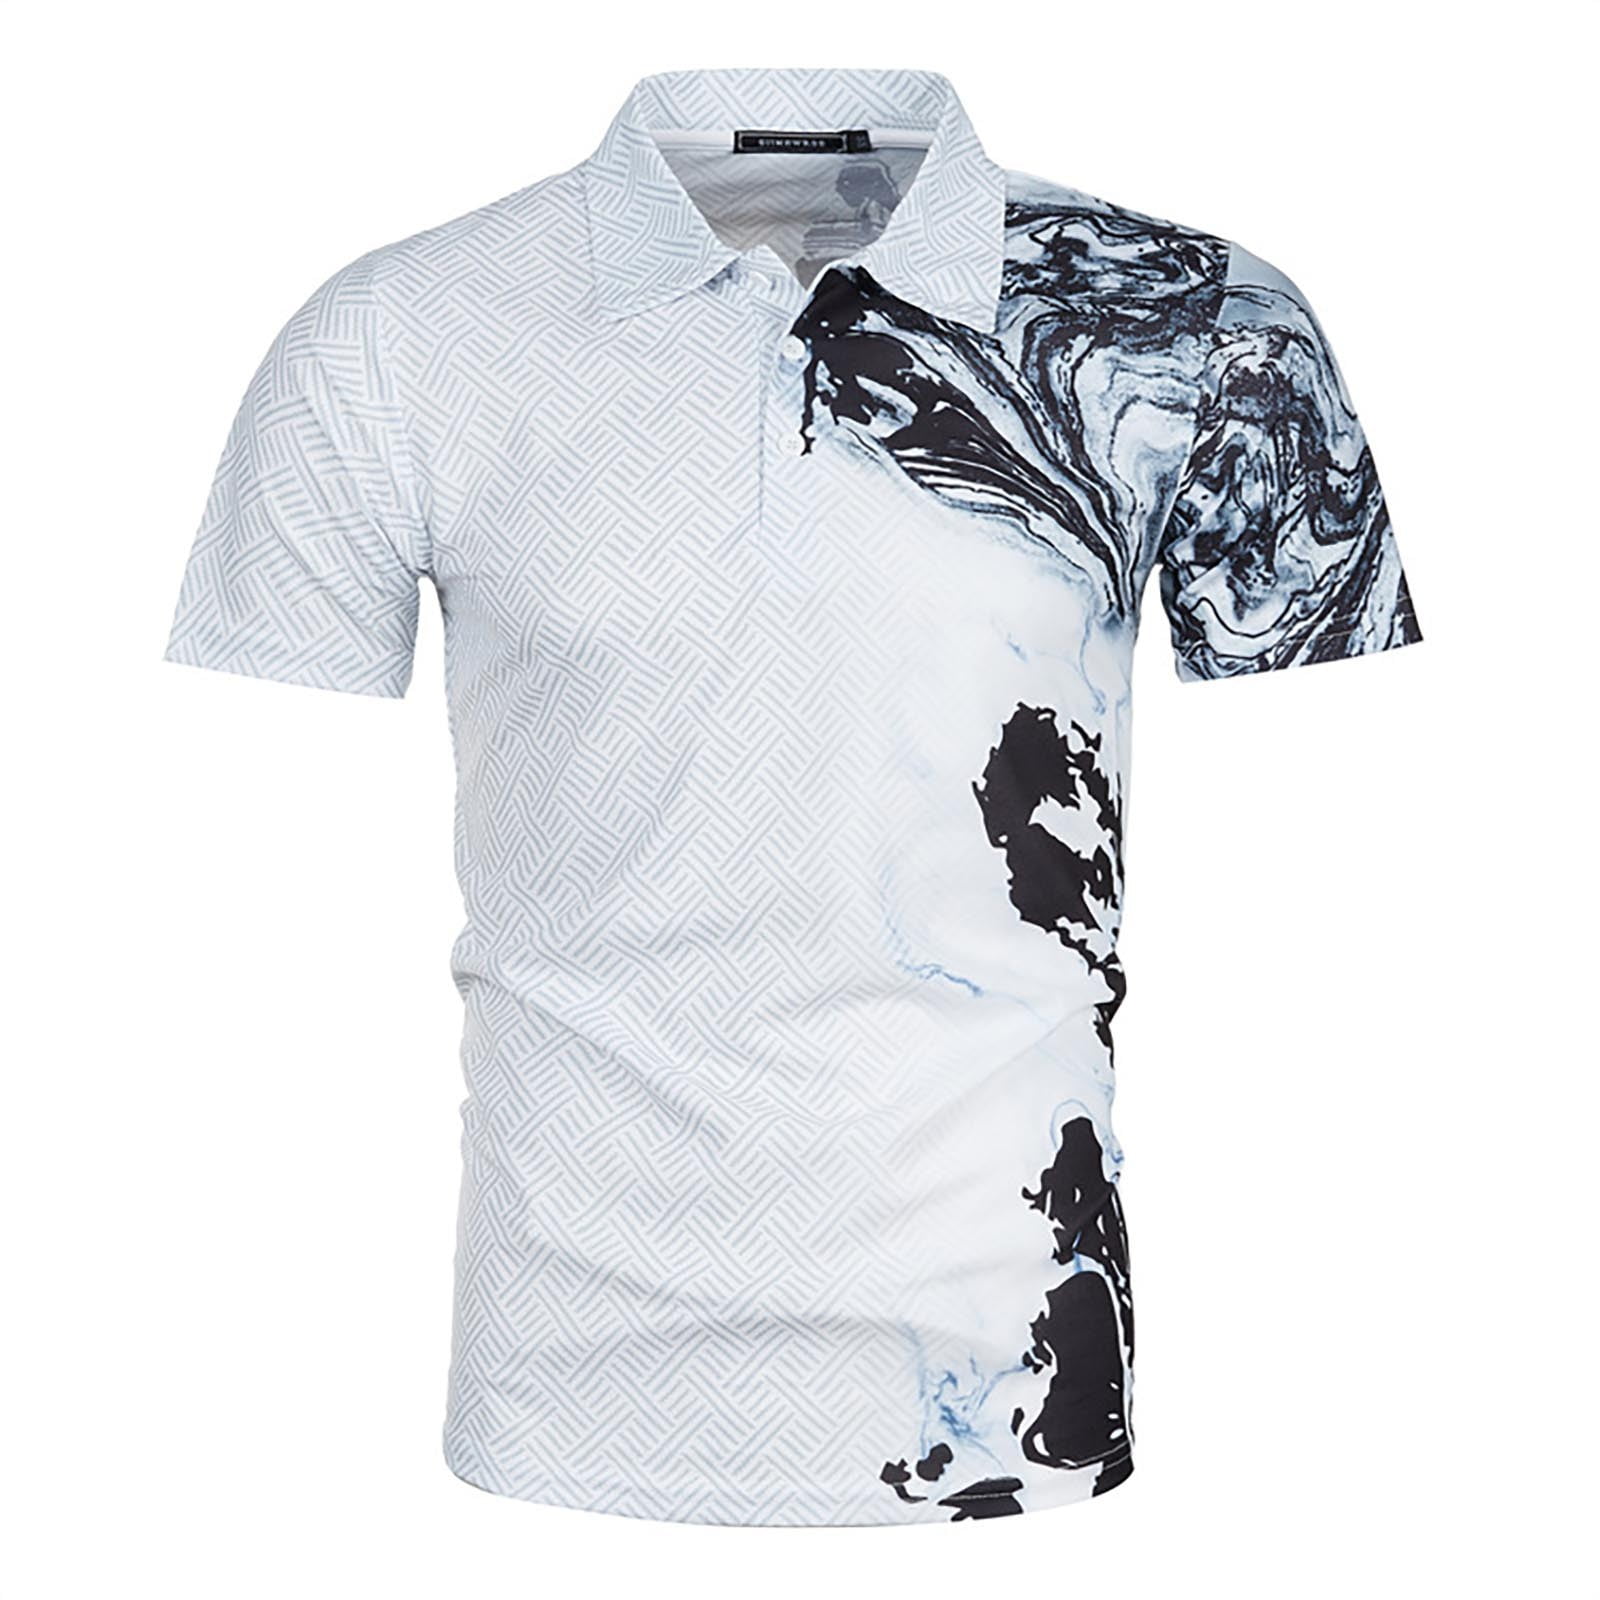 Shudageng New Mens Summer Fashion Casual 3d Printing Polo Shirt Lapel Casual Short Sleeve Tops